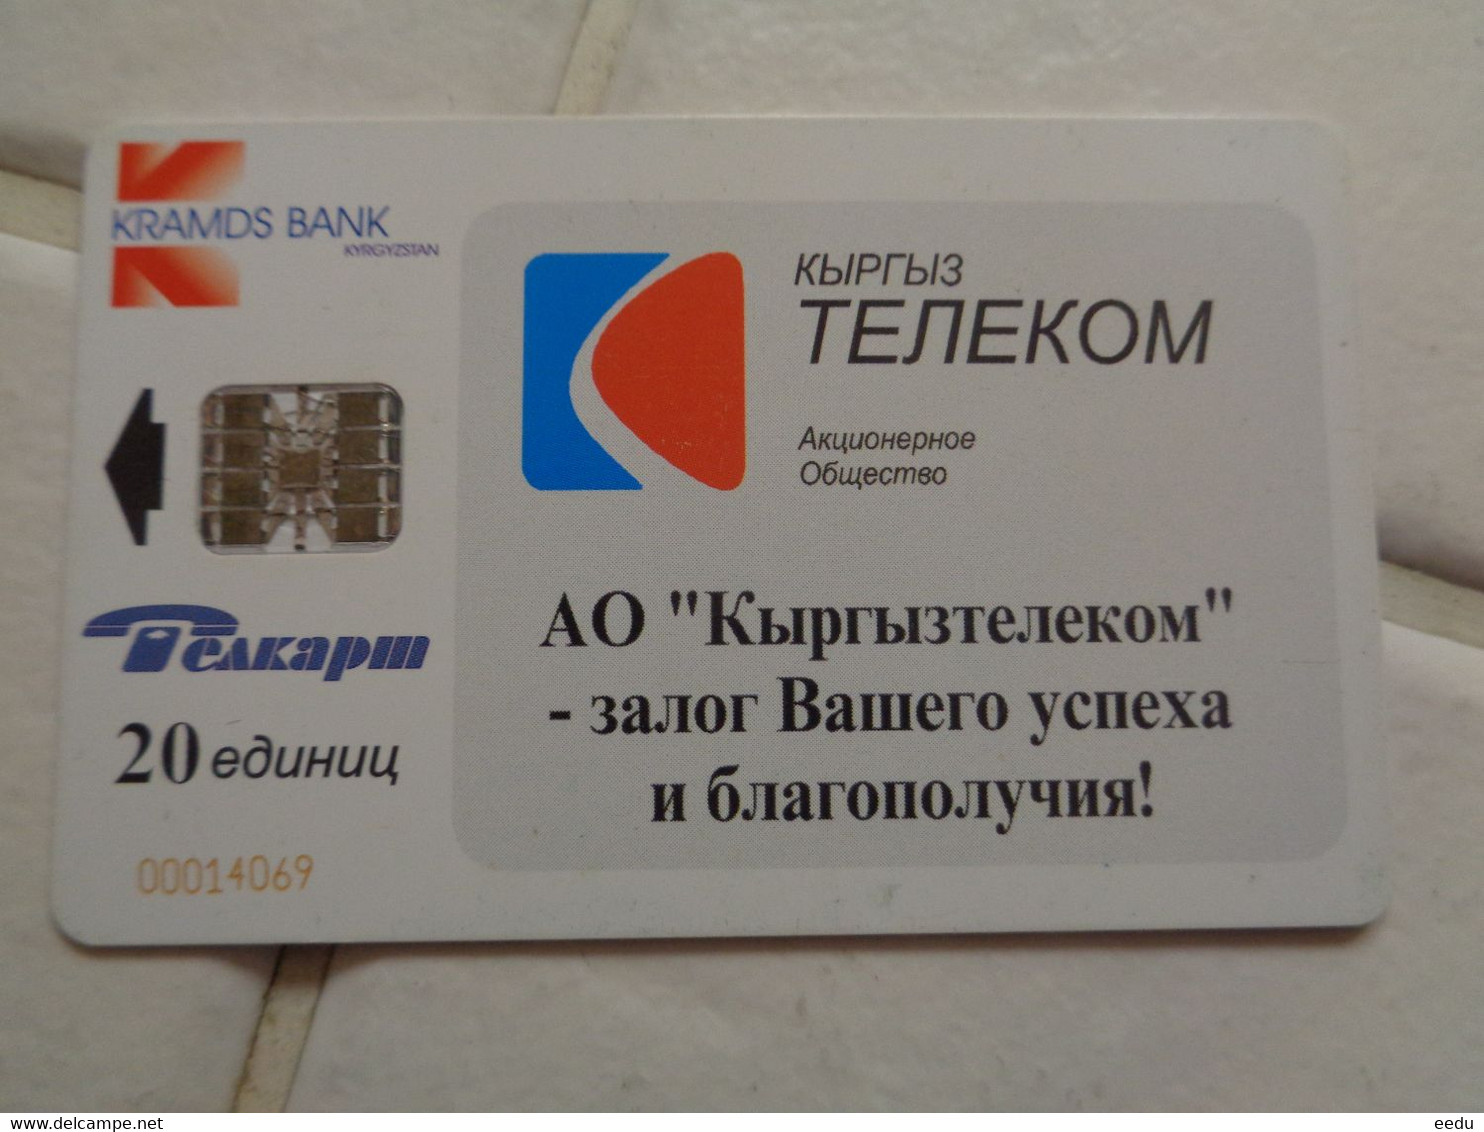 Kyrgyzstan Phonecard - Kyrgyzstan